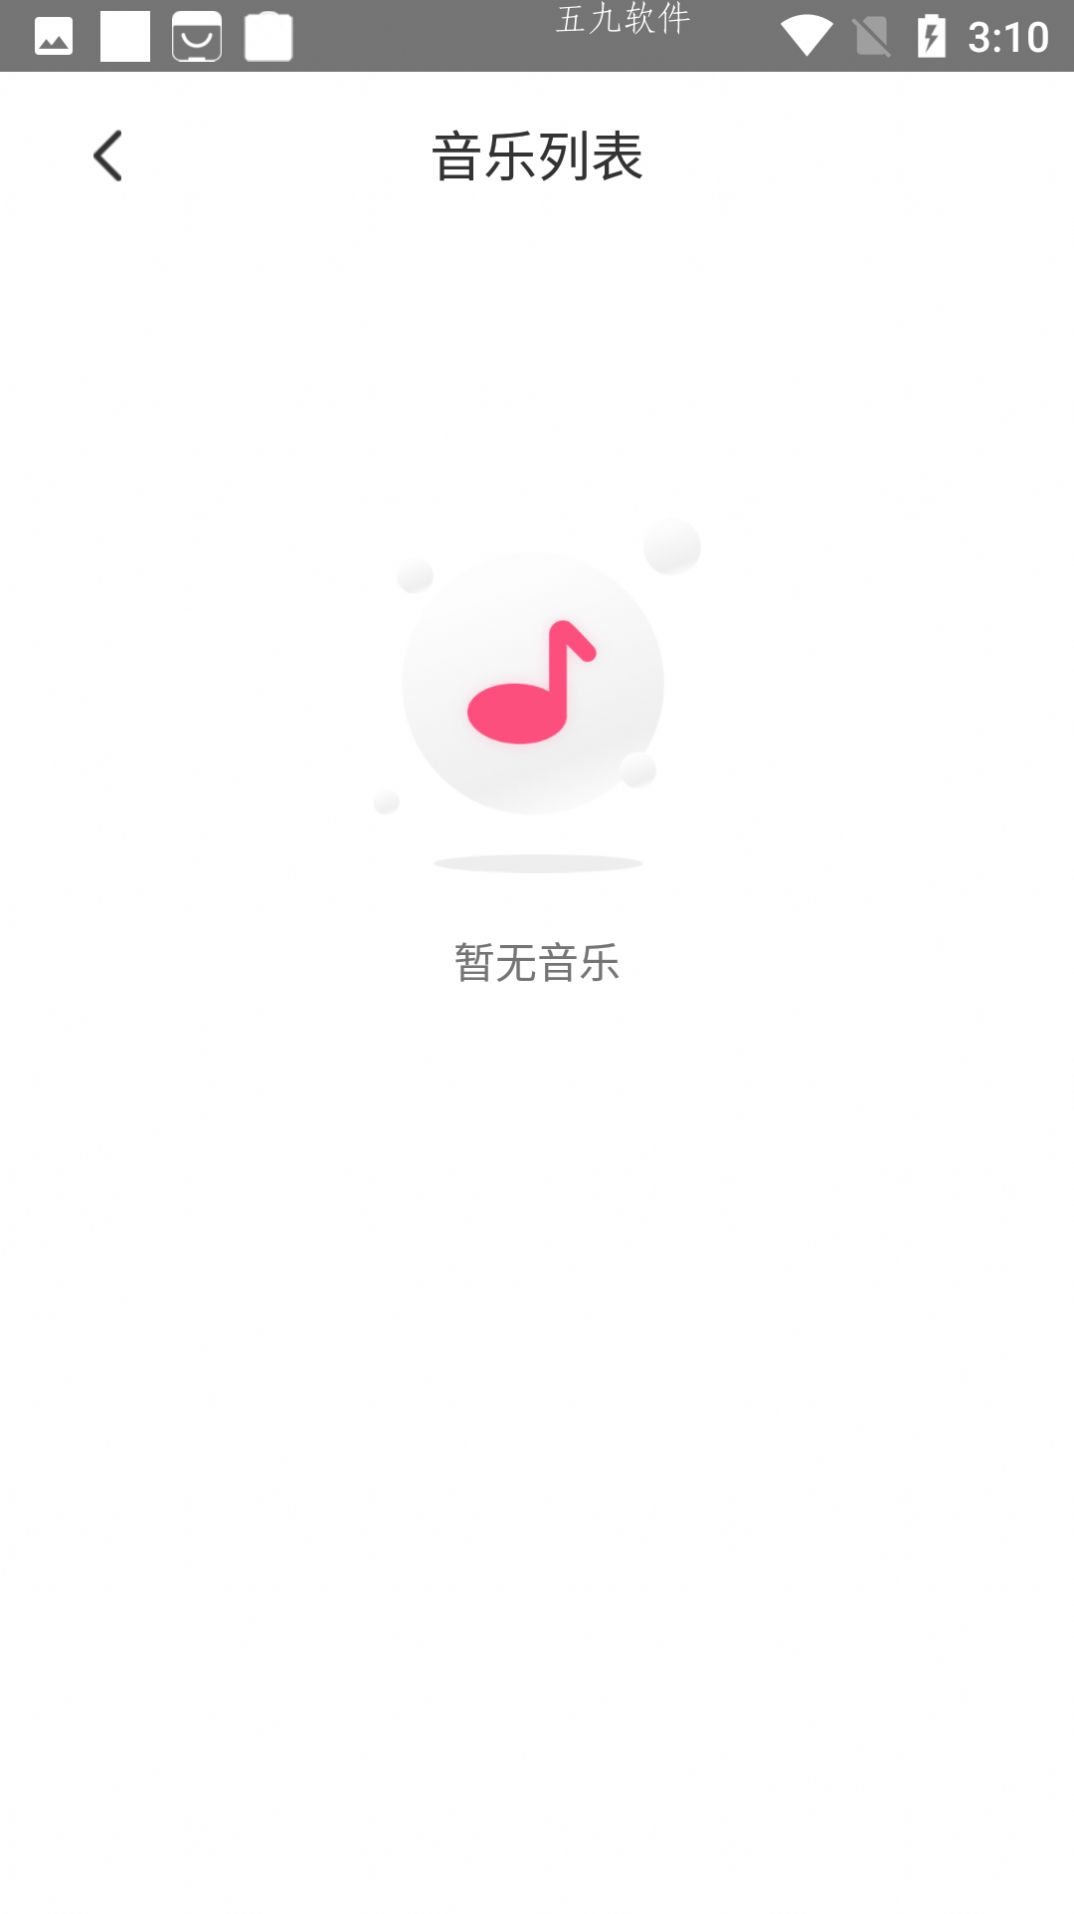 魅动音乐app